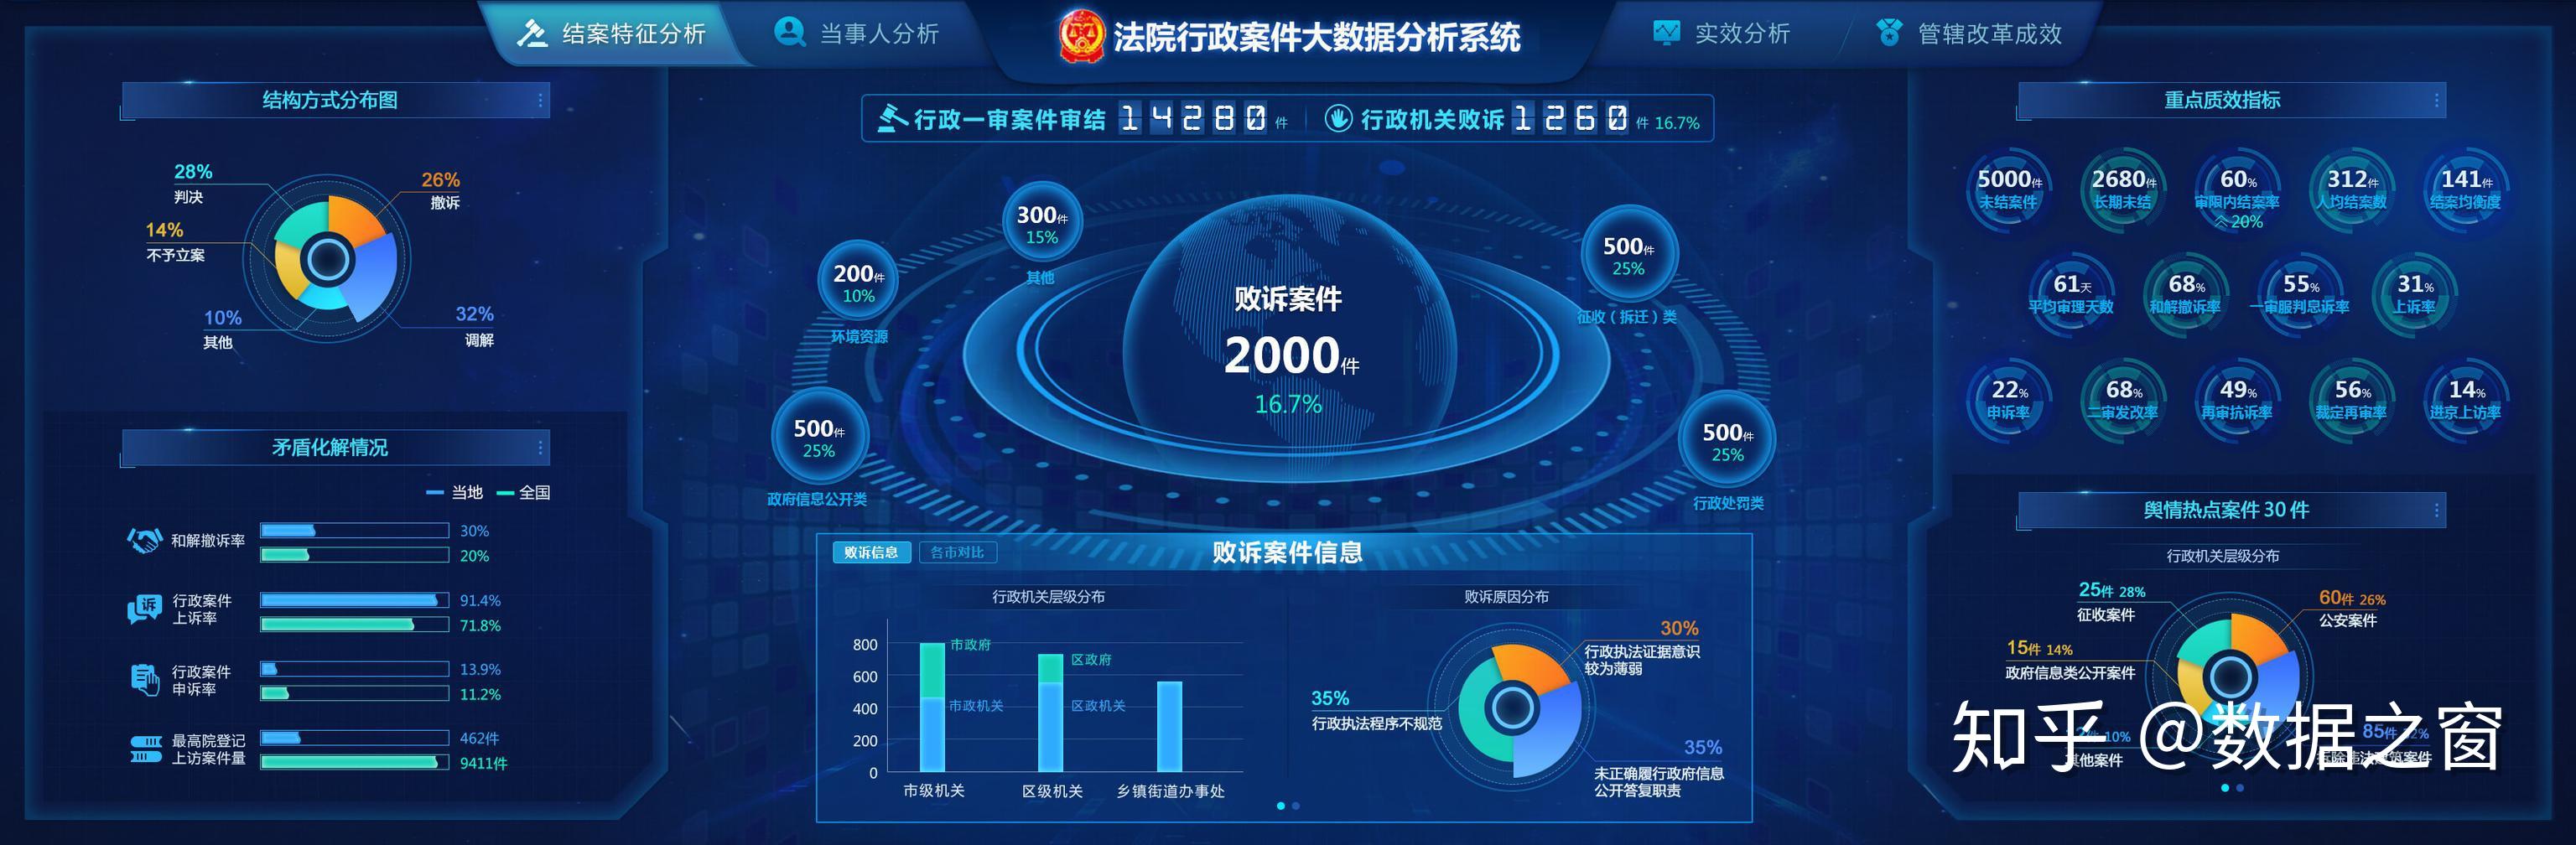 中国大数据产业白皮书__大数据技术白皮书